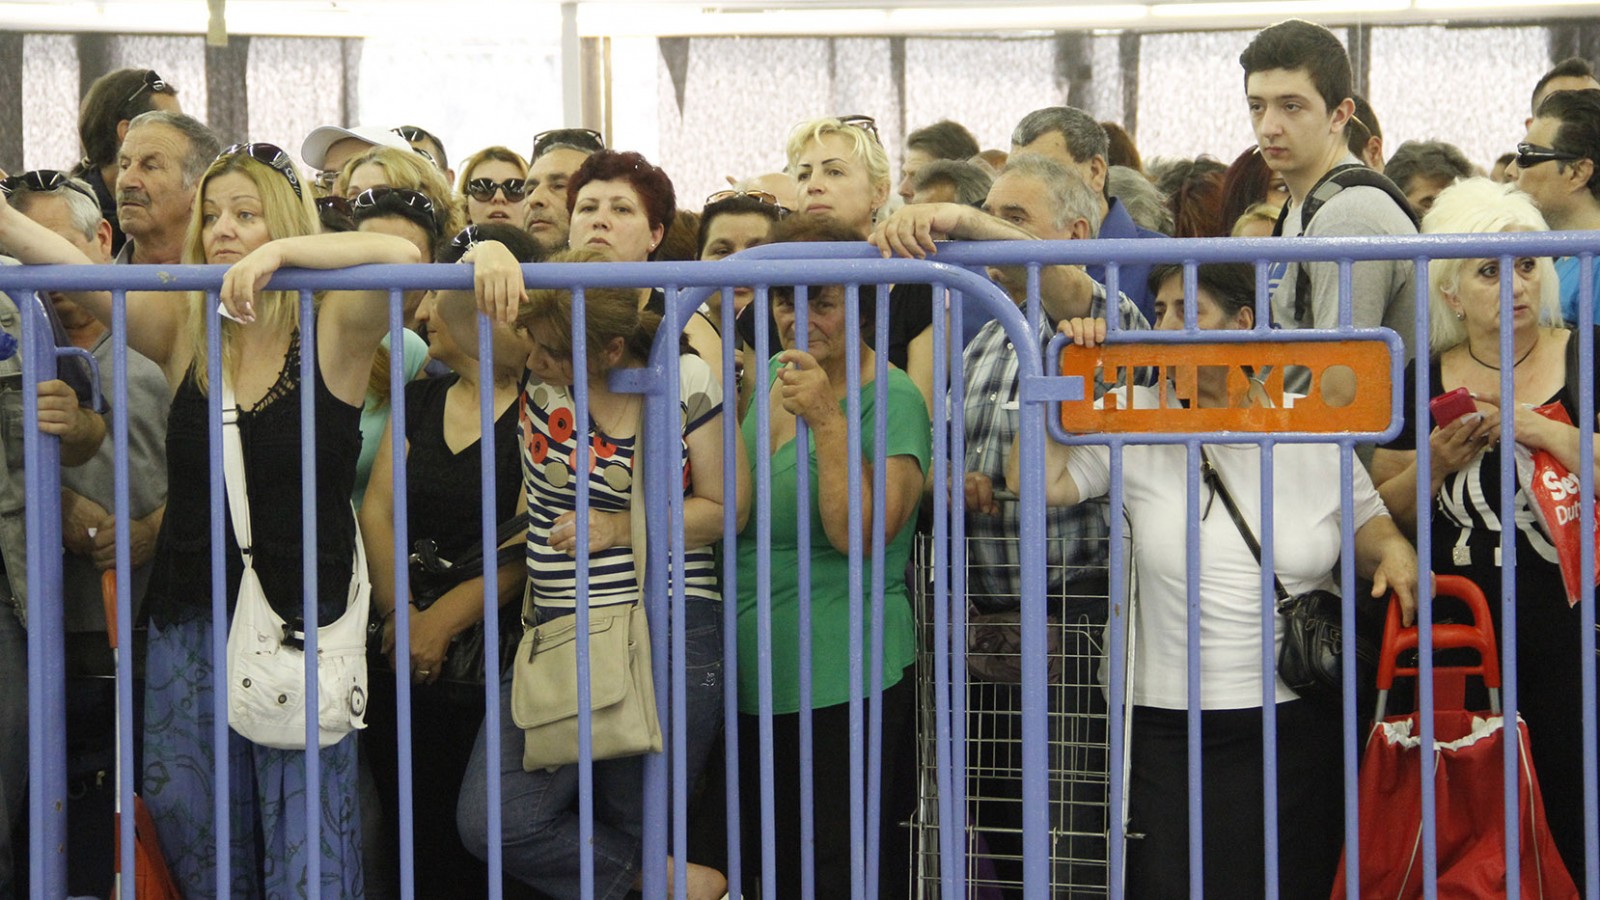 יוונים מחכים בתור לחלוקת מזון בבית תמחוי ממשלתי (צילום: GRIGORIS SIAMIDIS / Shutterstock, Inc)